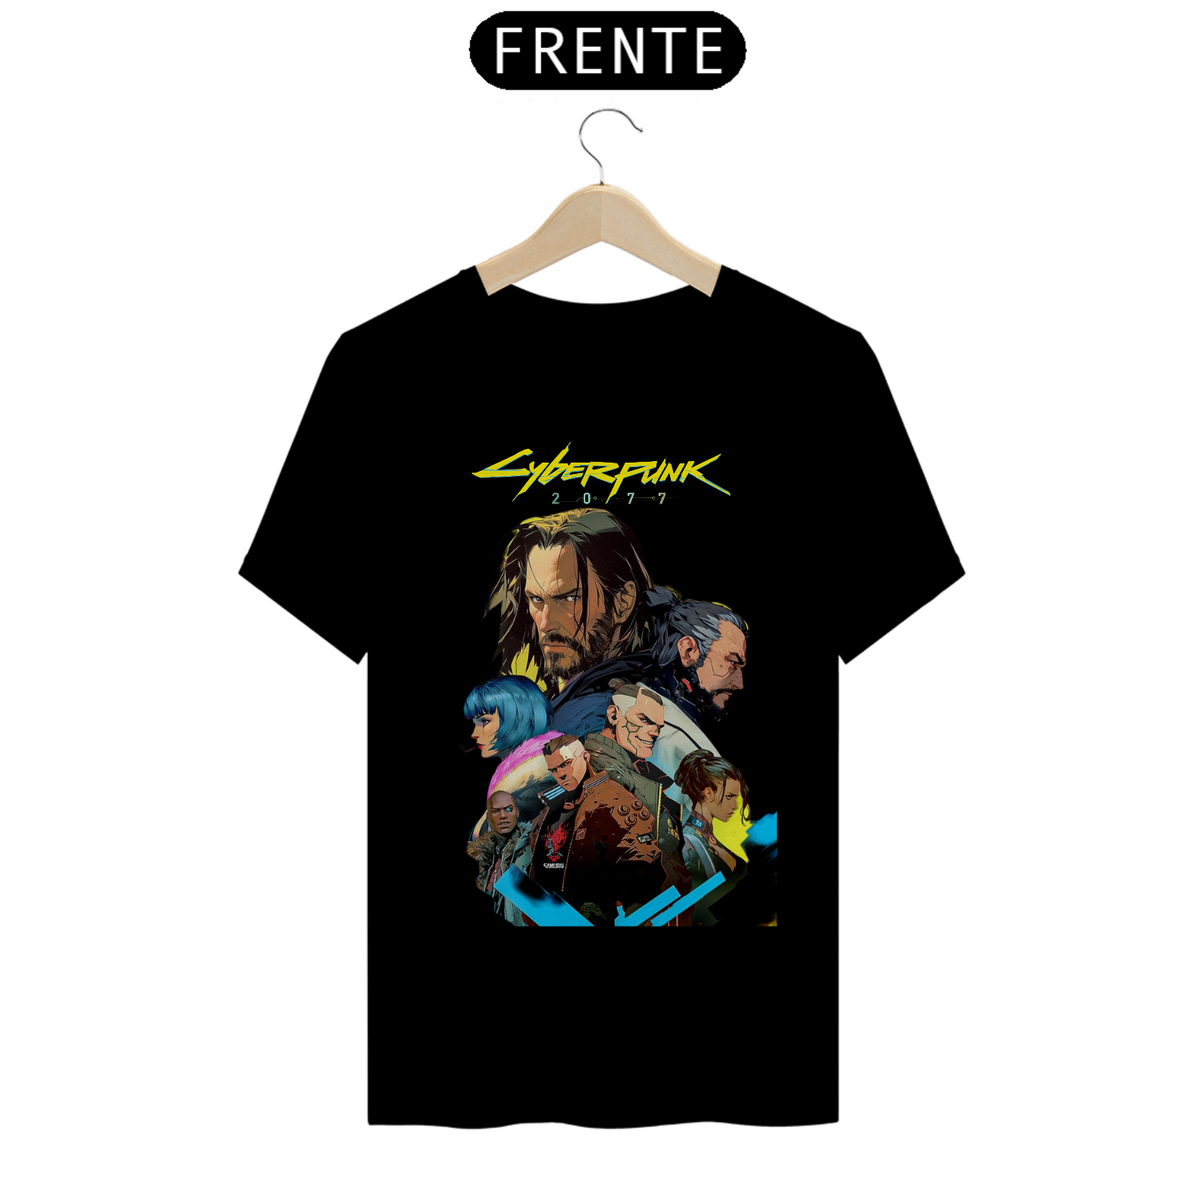 Nome do produto: Cyberpunk 2k77 T-shirt